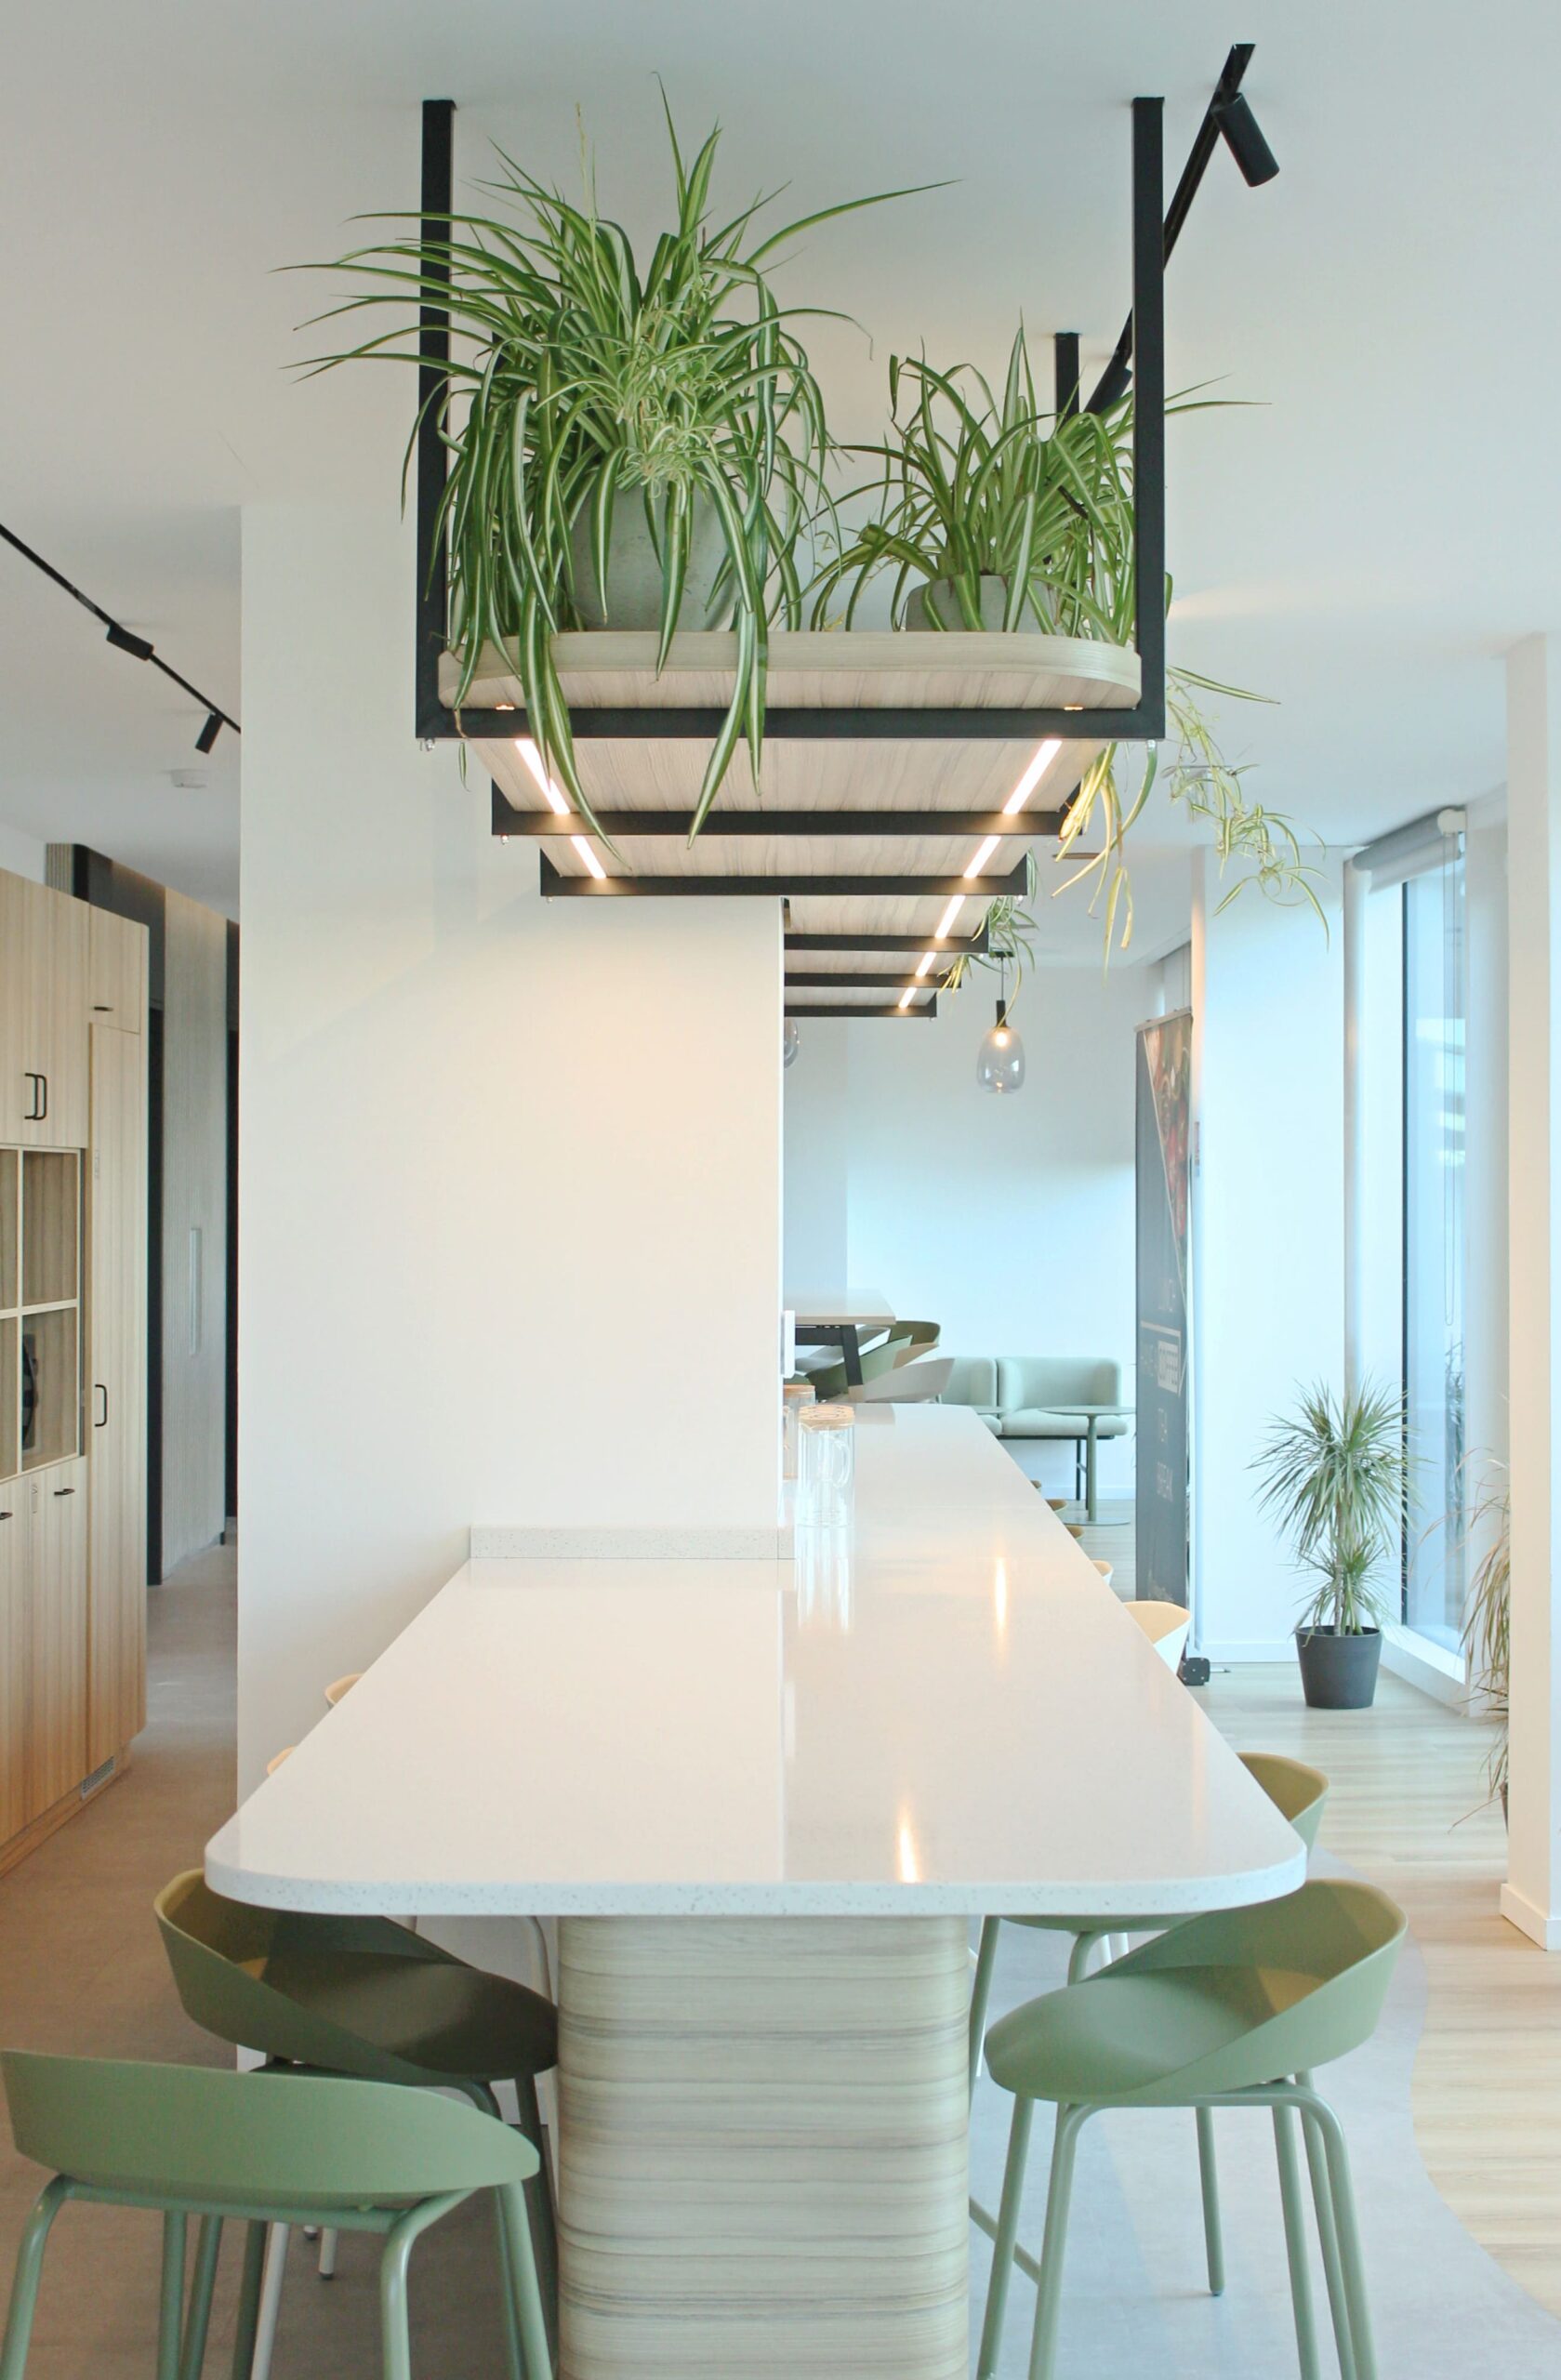 environnement de travail agréable : photo d'une cafétéria avec des meubles modernes et des plantes suspendues au plafond